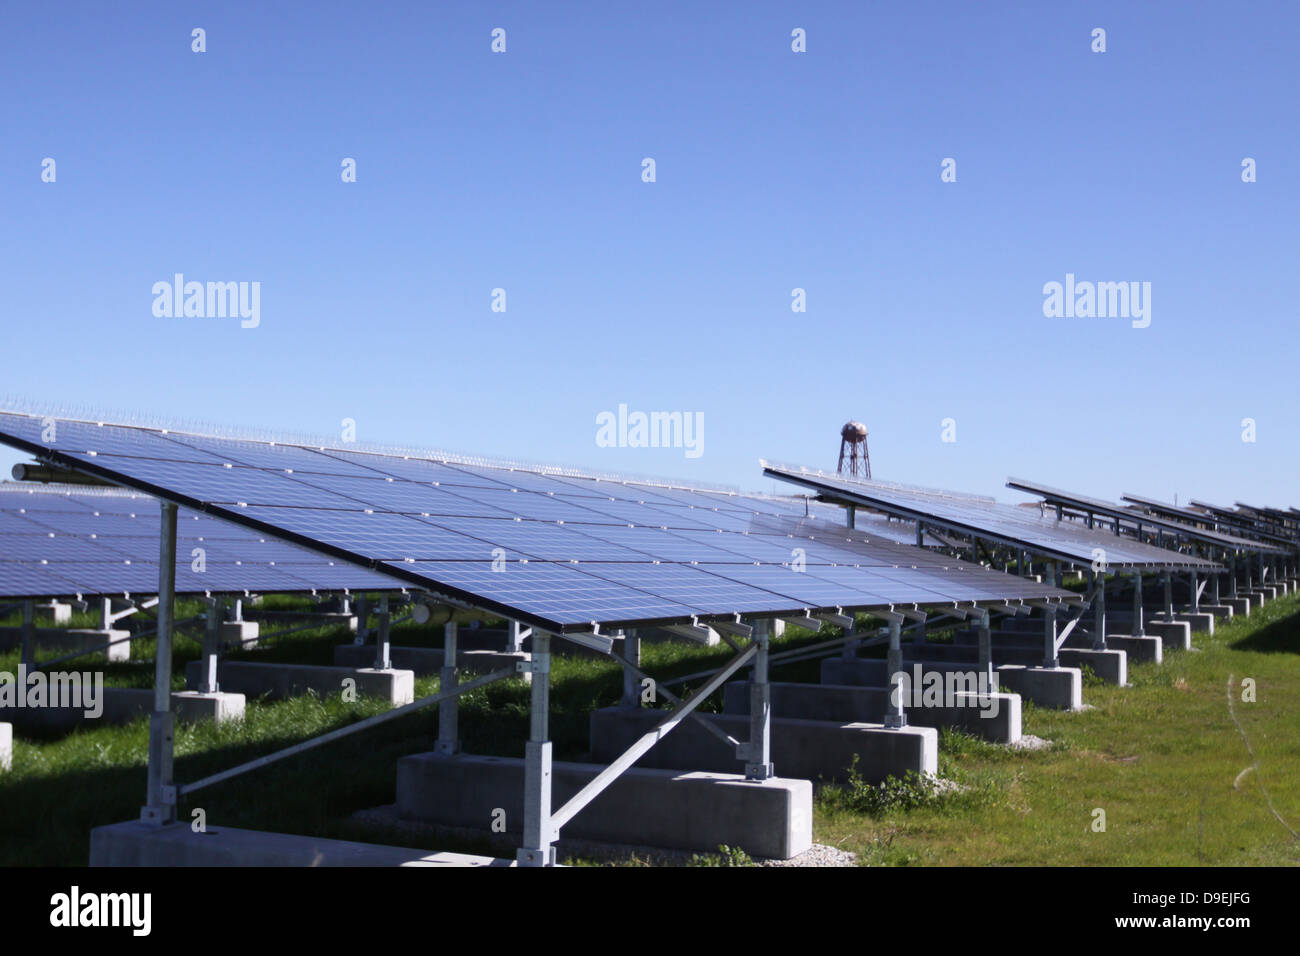 Eine Photovoltaik-Anlage von Solarzellen. Stockfoto